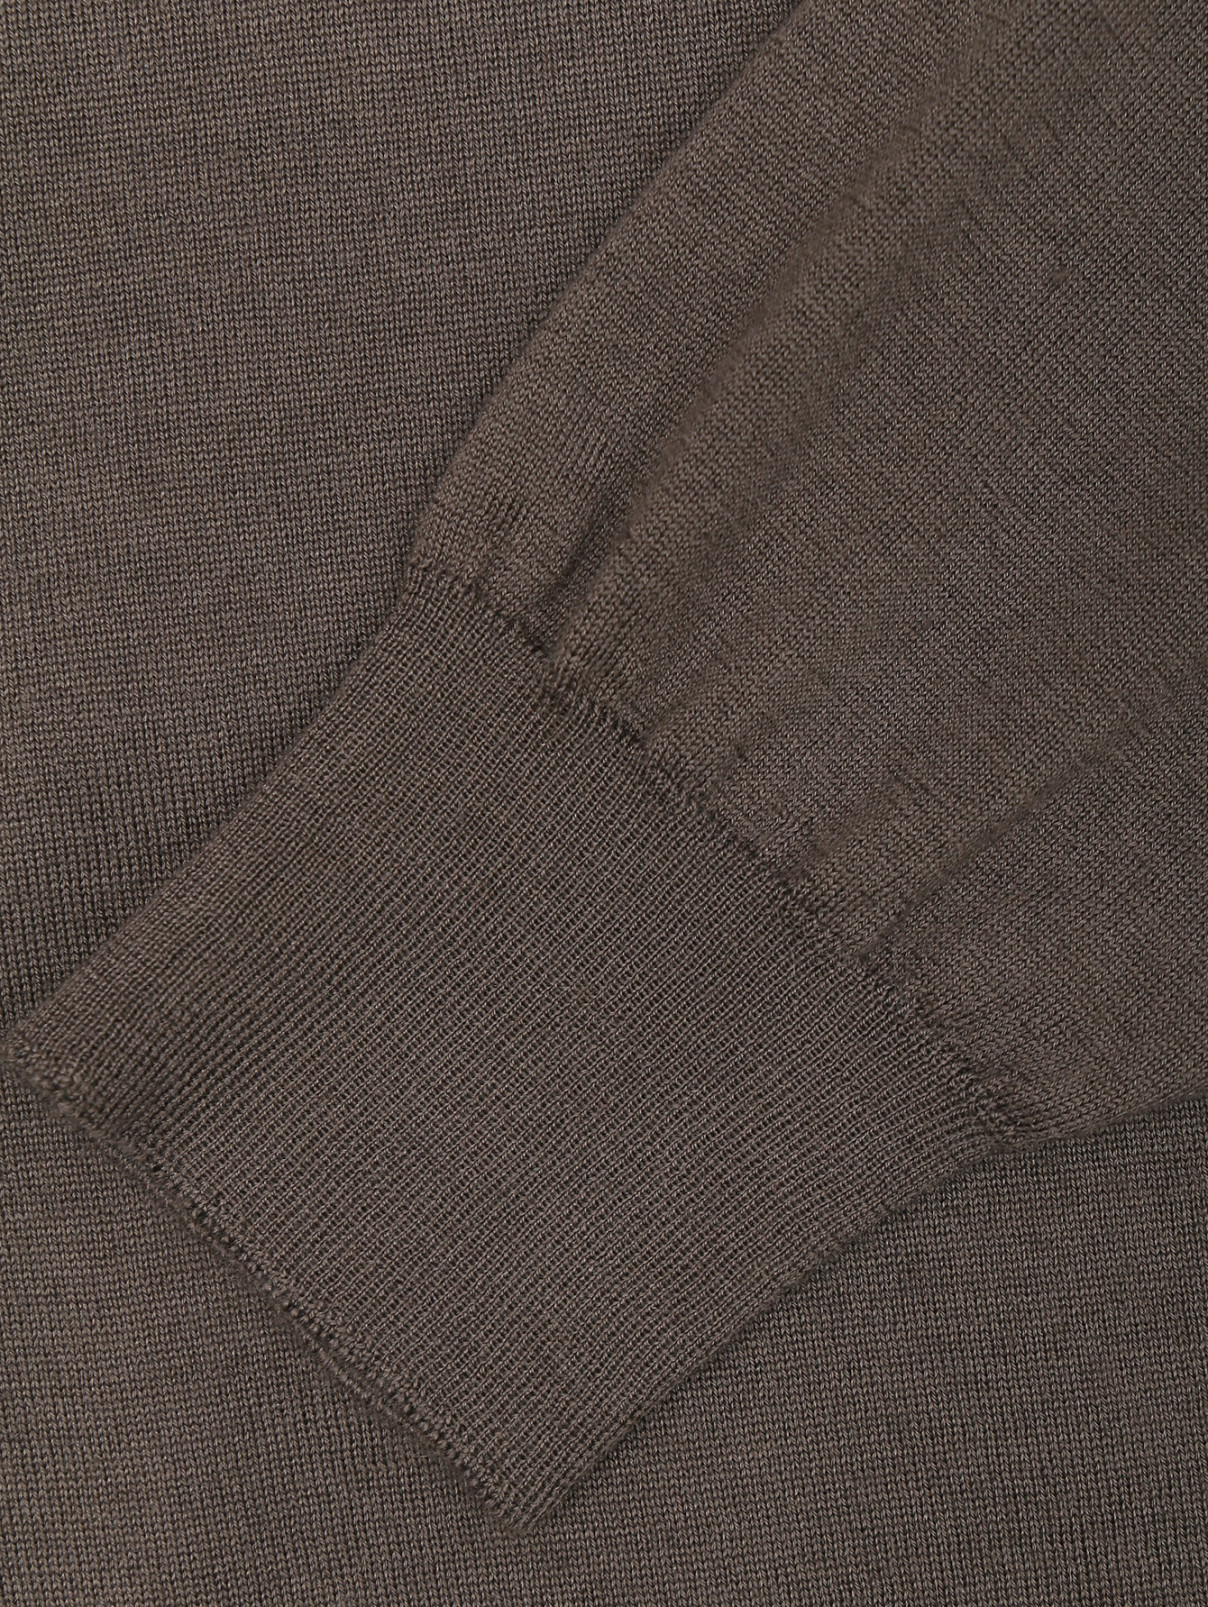 Джемпер из шерсти, шелка и кашемира мелкой вязки LARDINI  –  Деталь  – Цвет:  Коричневый